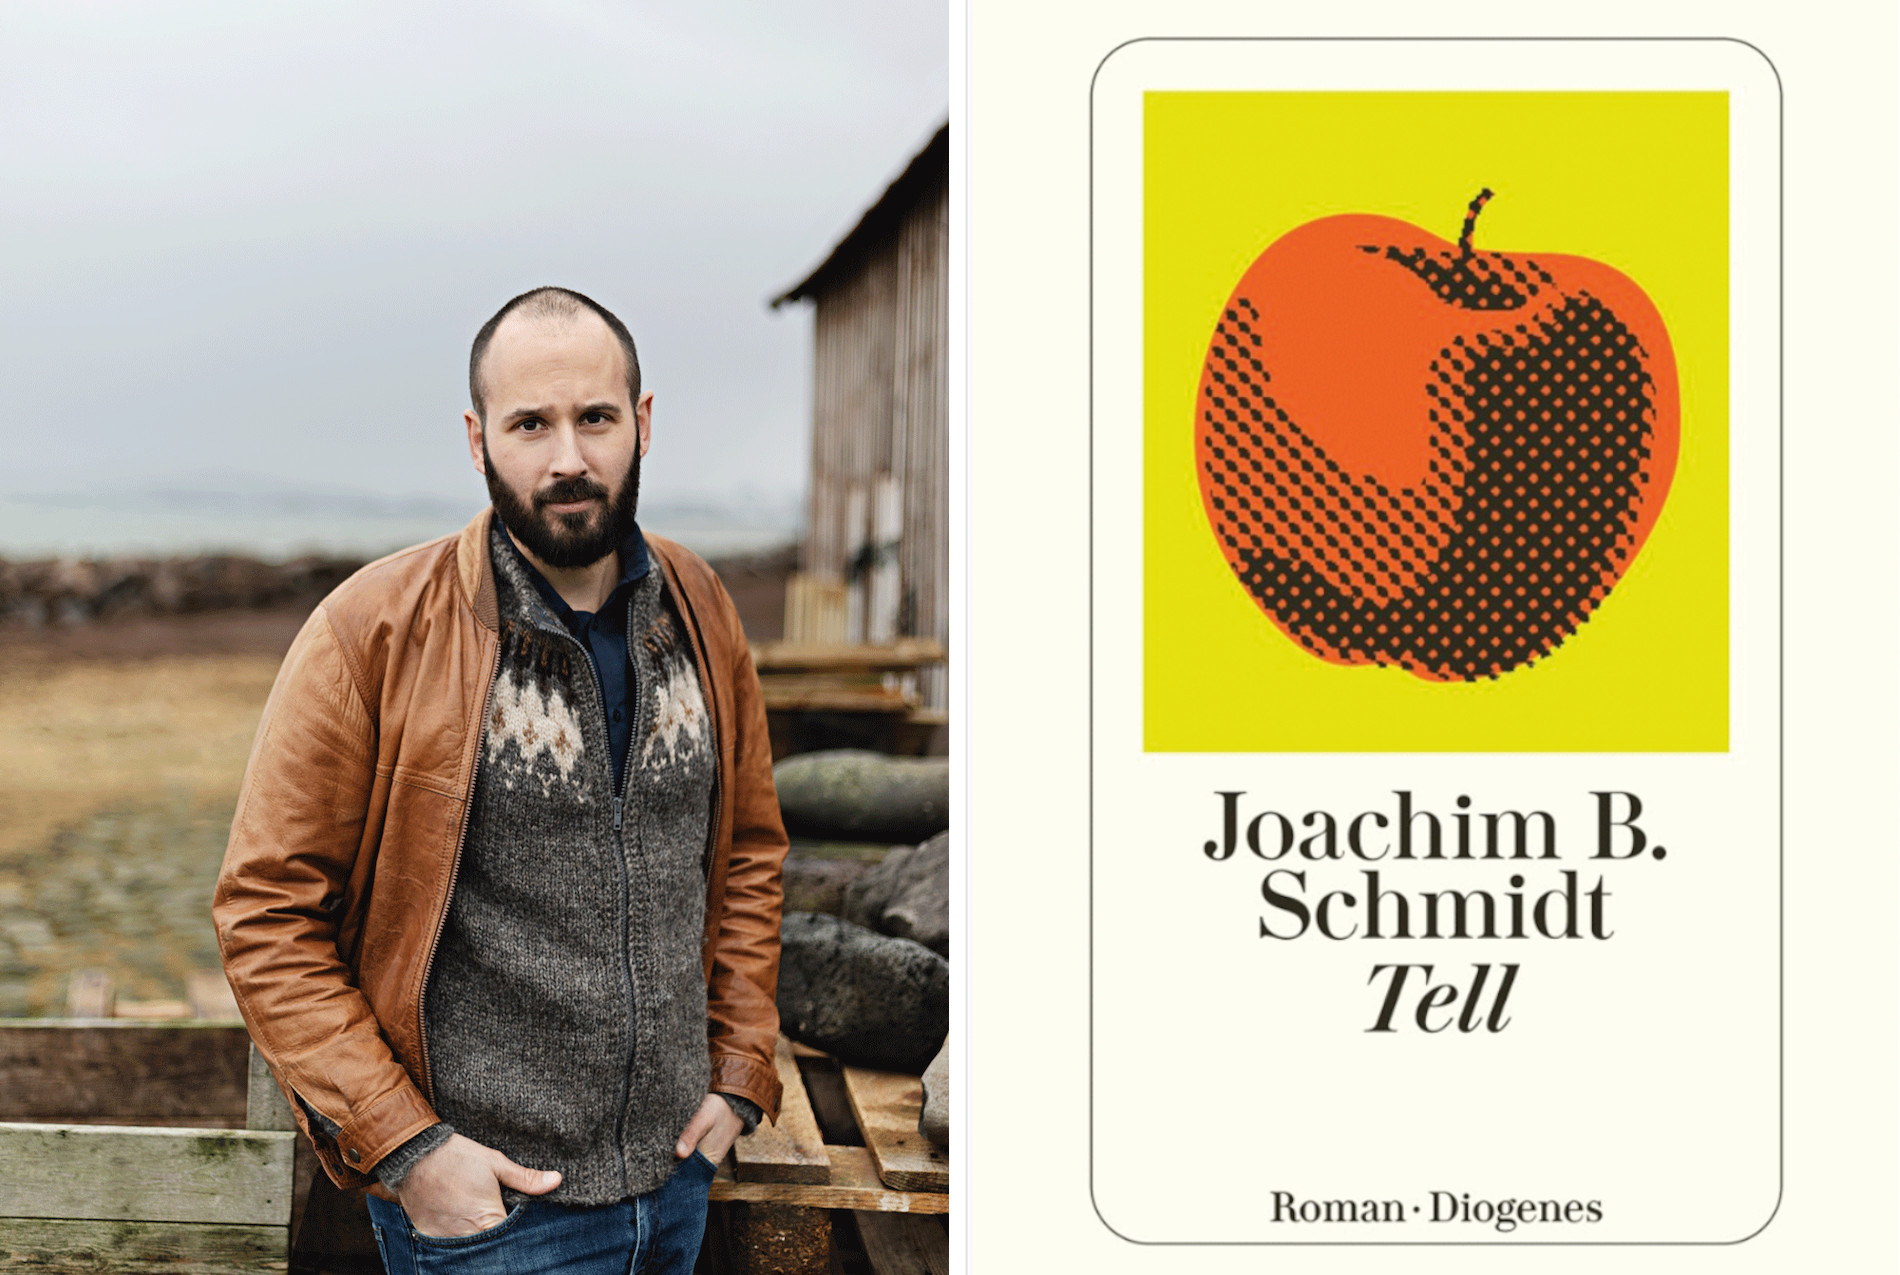 Gewinnspielbild zur Verlosung des Romans „Tell“ von Joachim B. Schmidt. Es sind der Autor in Island und das Buchcover mit einem Apfel darauf zu sehen.